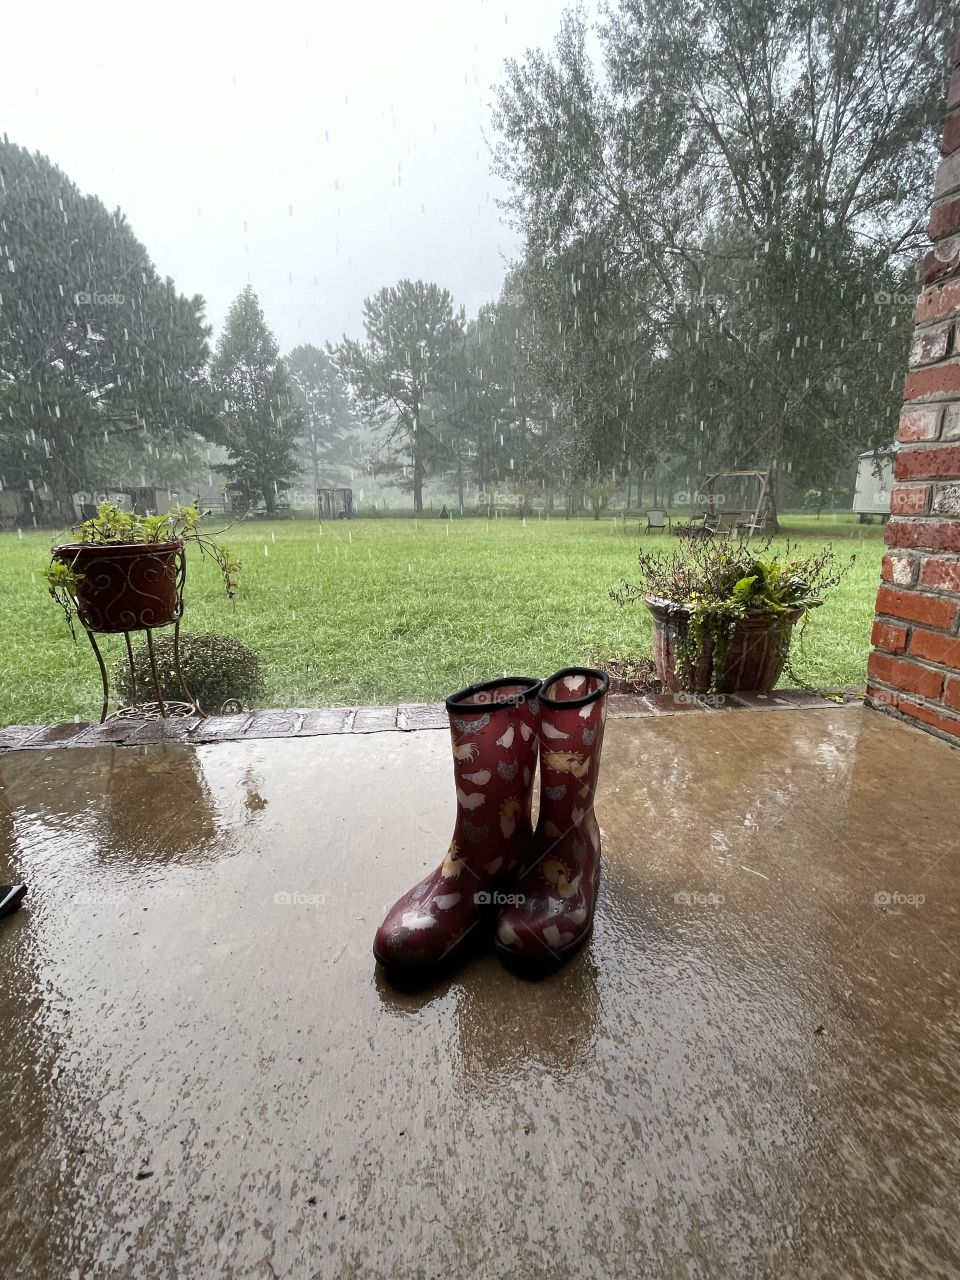 Good o’l rain boots. 